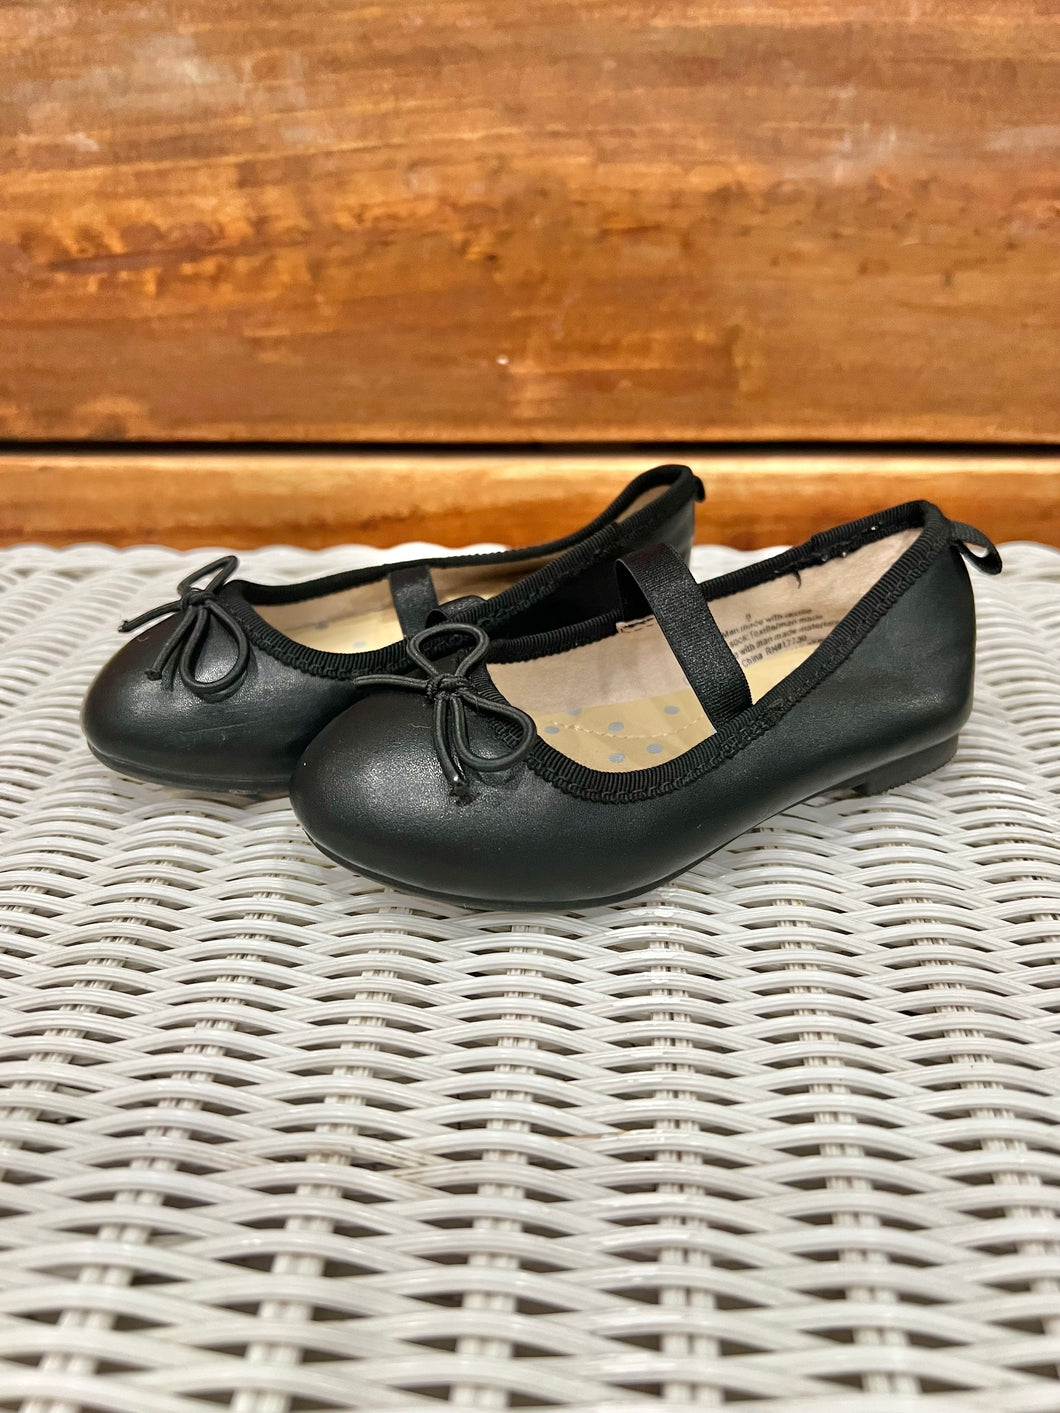 Cat & Jack Black Shoes Size 6